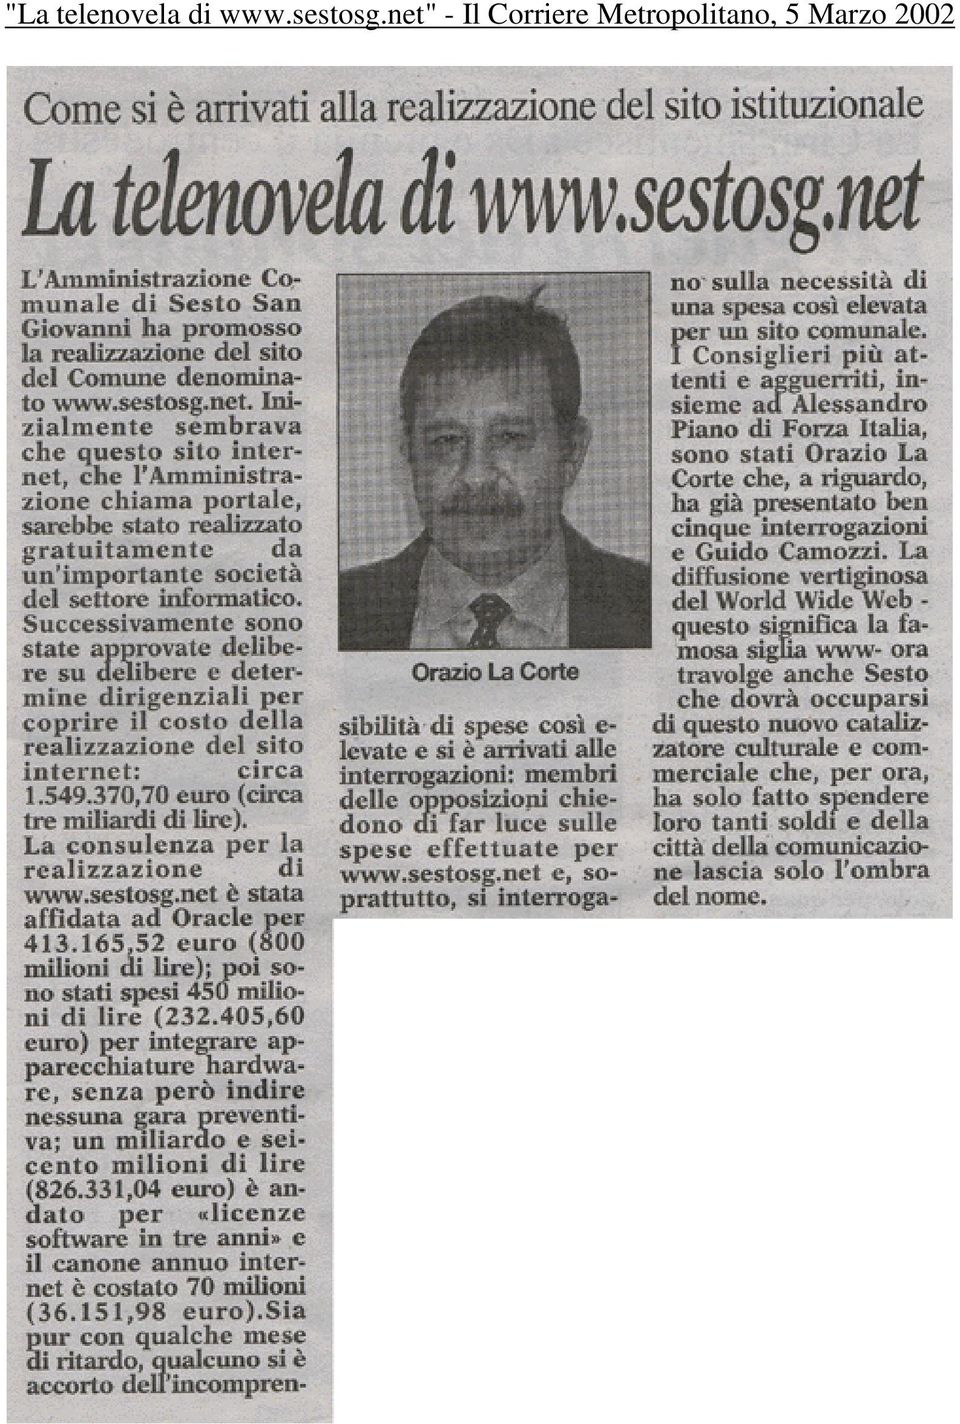 net" - Il Corriere